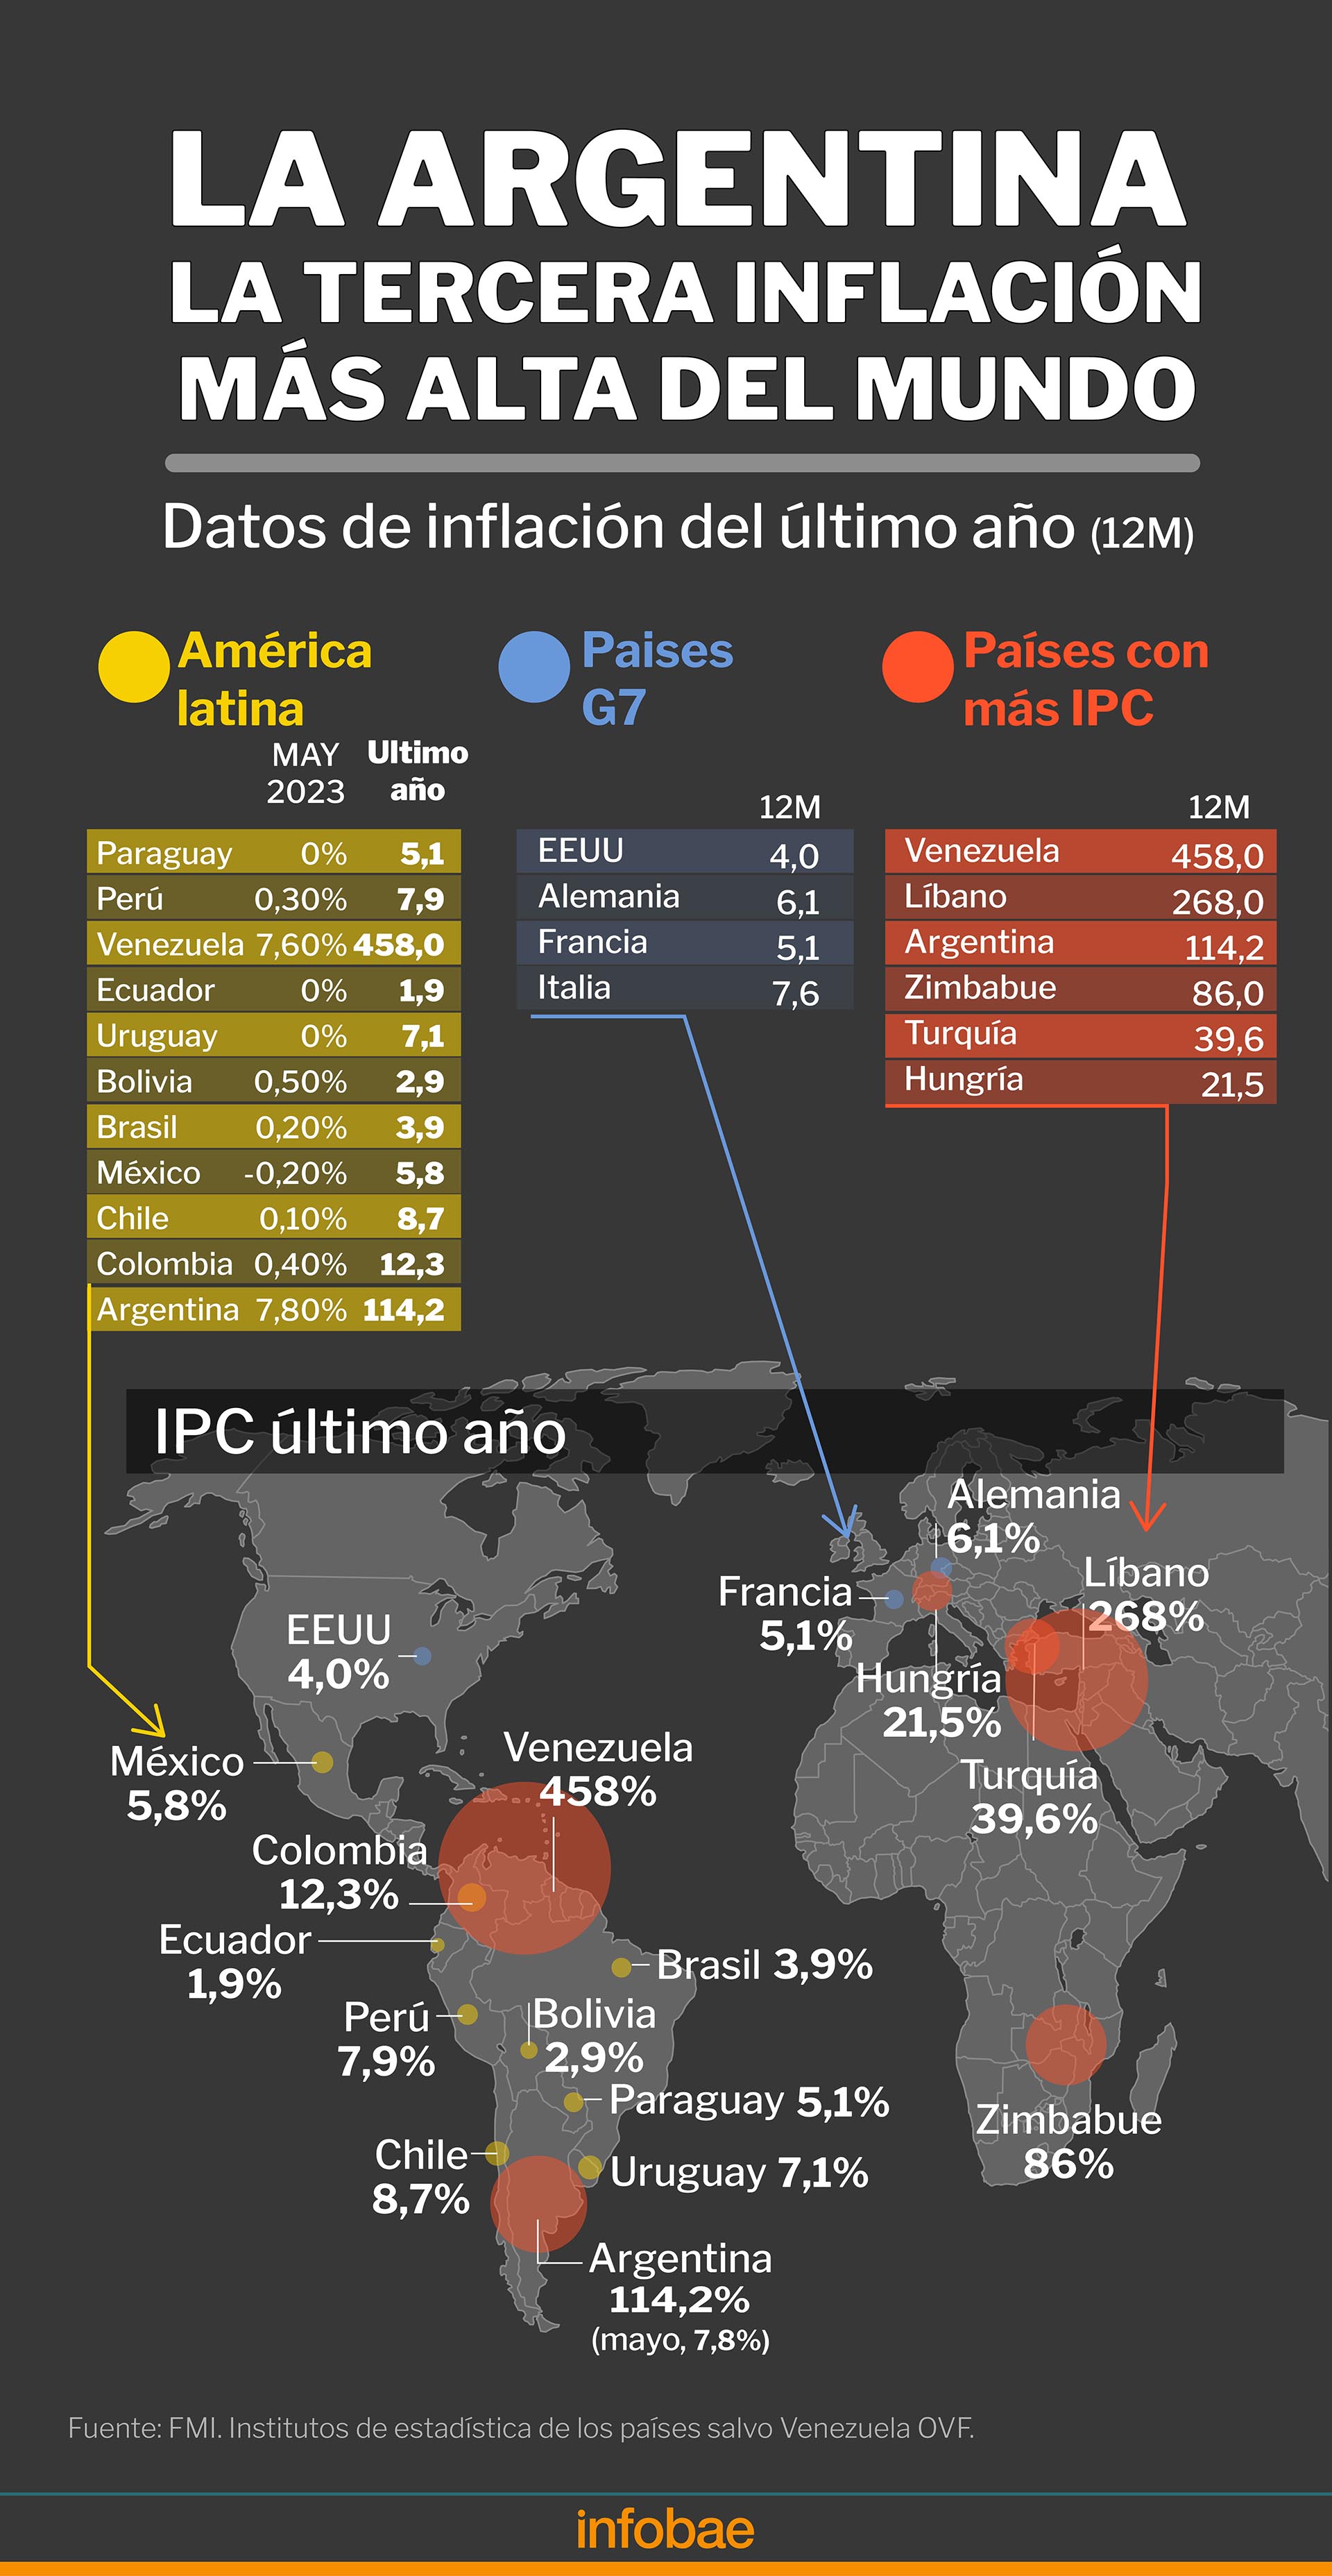 La Argentina registró en mayo la tercera inflación más alta del mundo
Infografía de Marcelo Regalado
